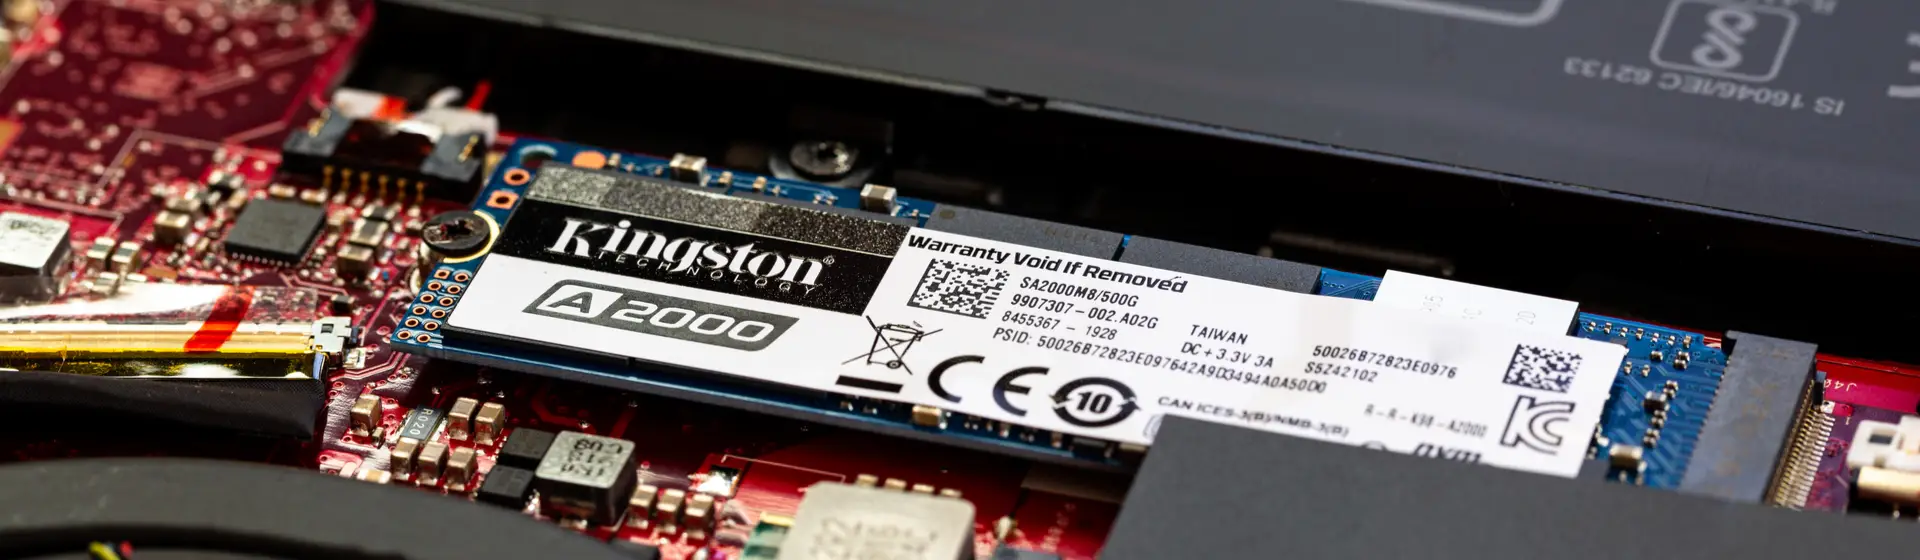 SSD 240GB Kingston: 4 melhores opções incluindo modelos da HyperX